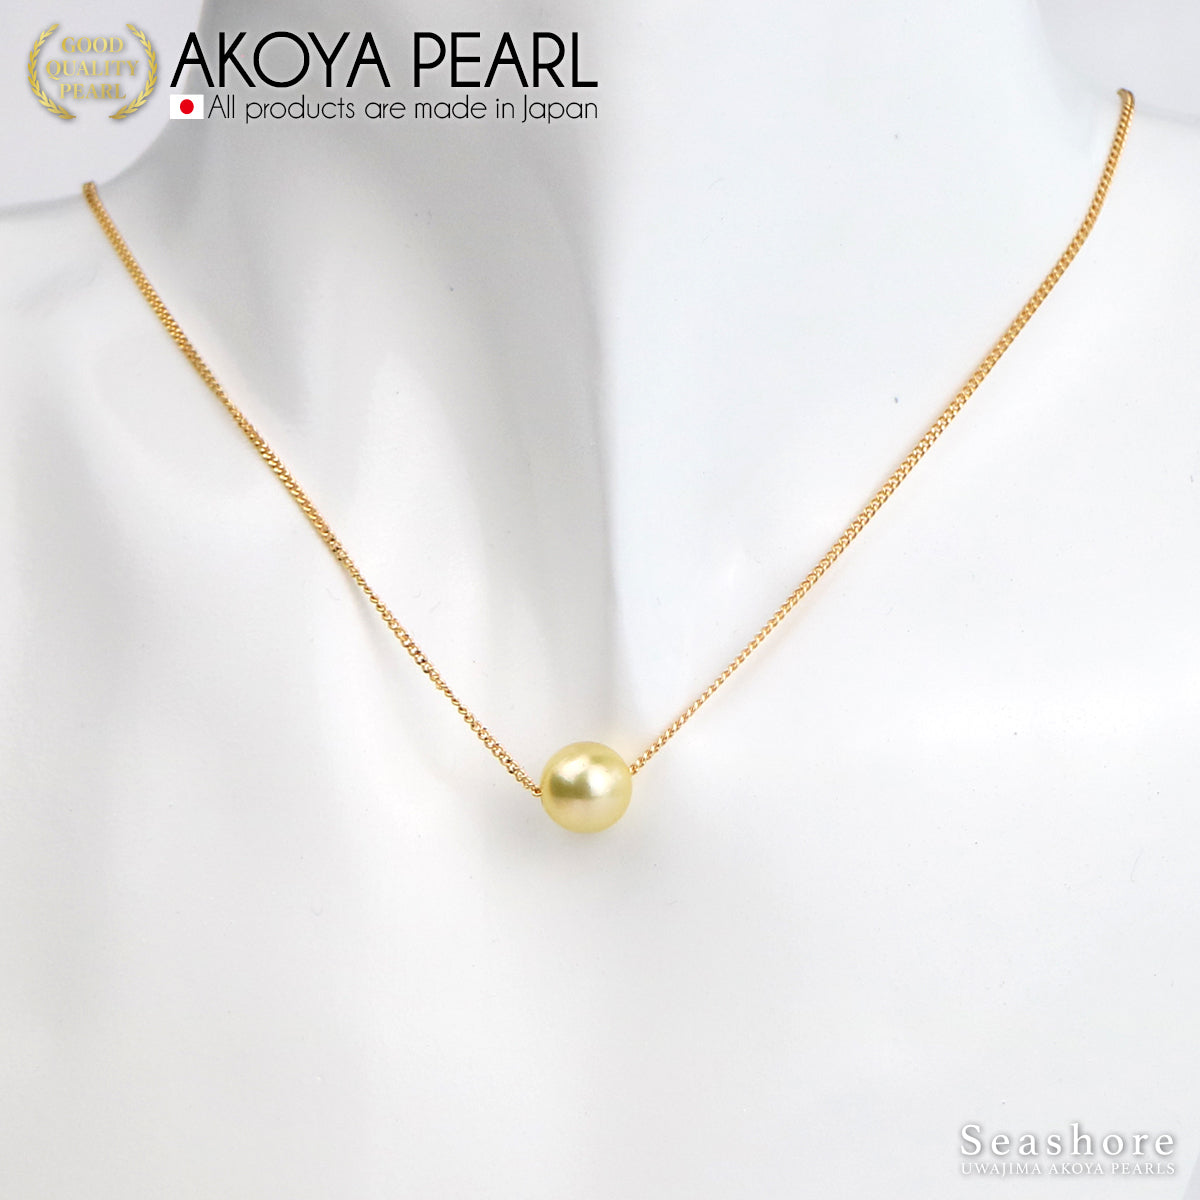 [Gold Akoya] 珍珠项链 [8.0-8.5mm] 黄铜铑 / 金 Akoya 珍珠 [2 种颜色]